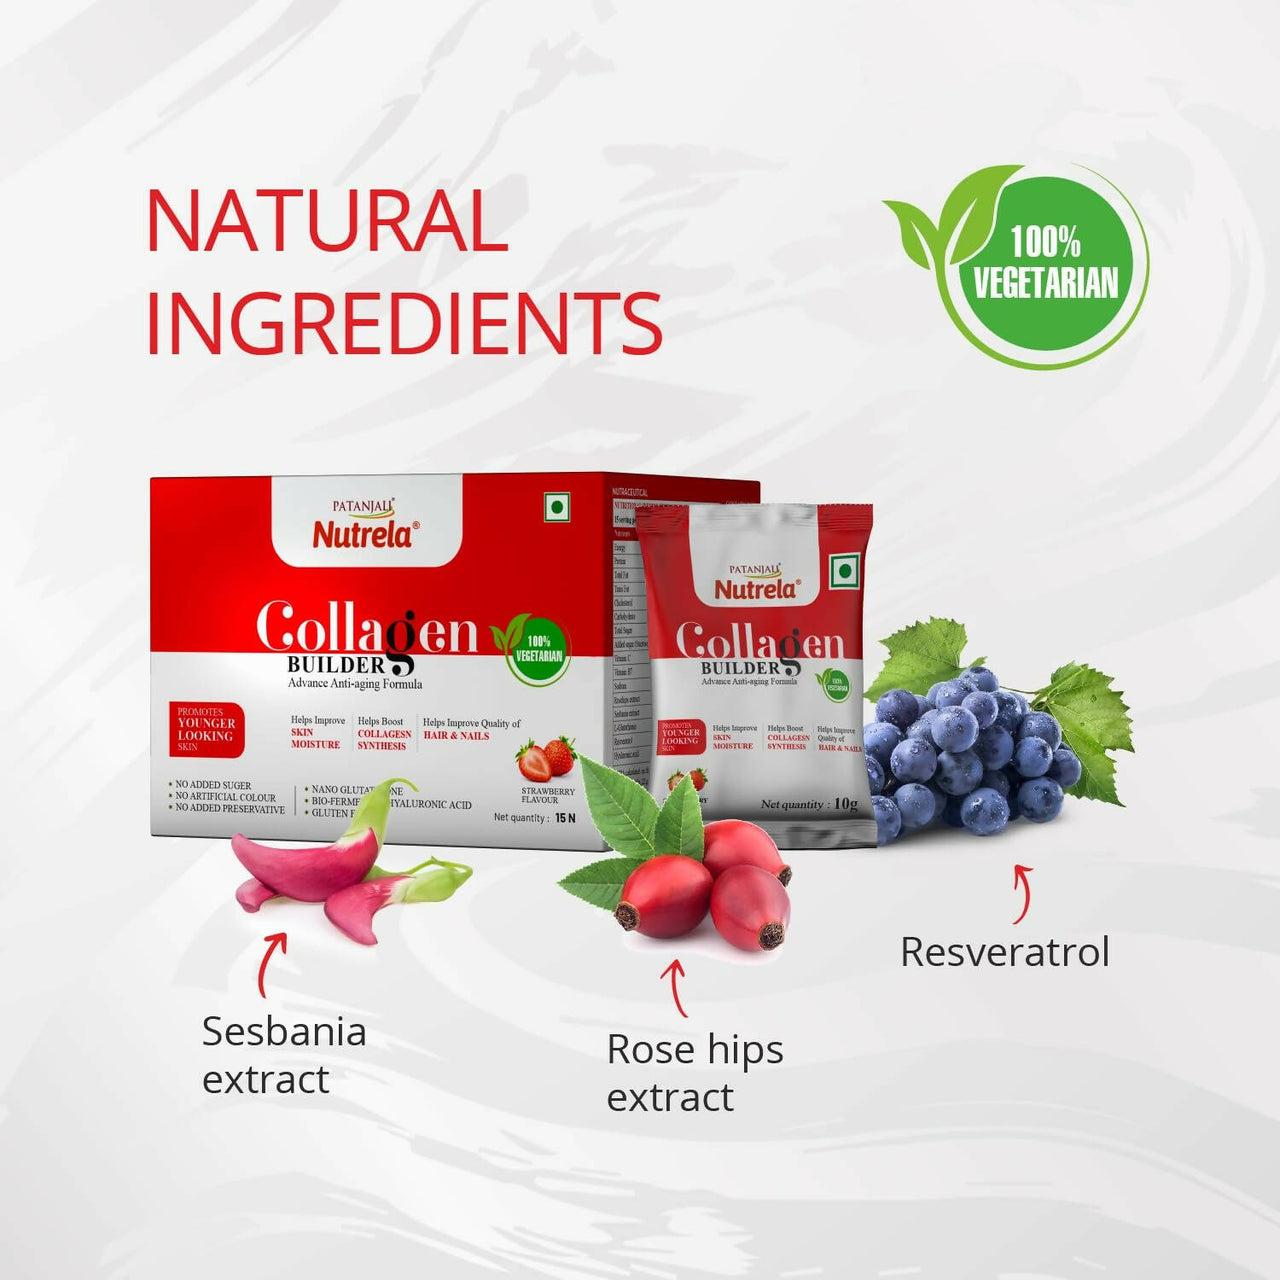 Patanjali Nutrela Collagen Builder Powder - Strawberry Flavour - Distacart